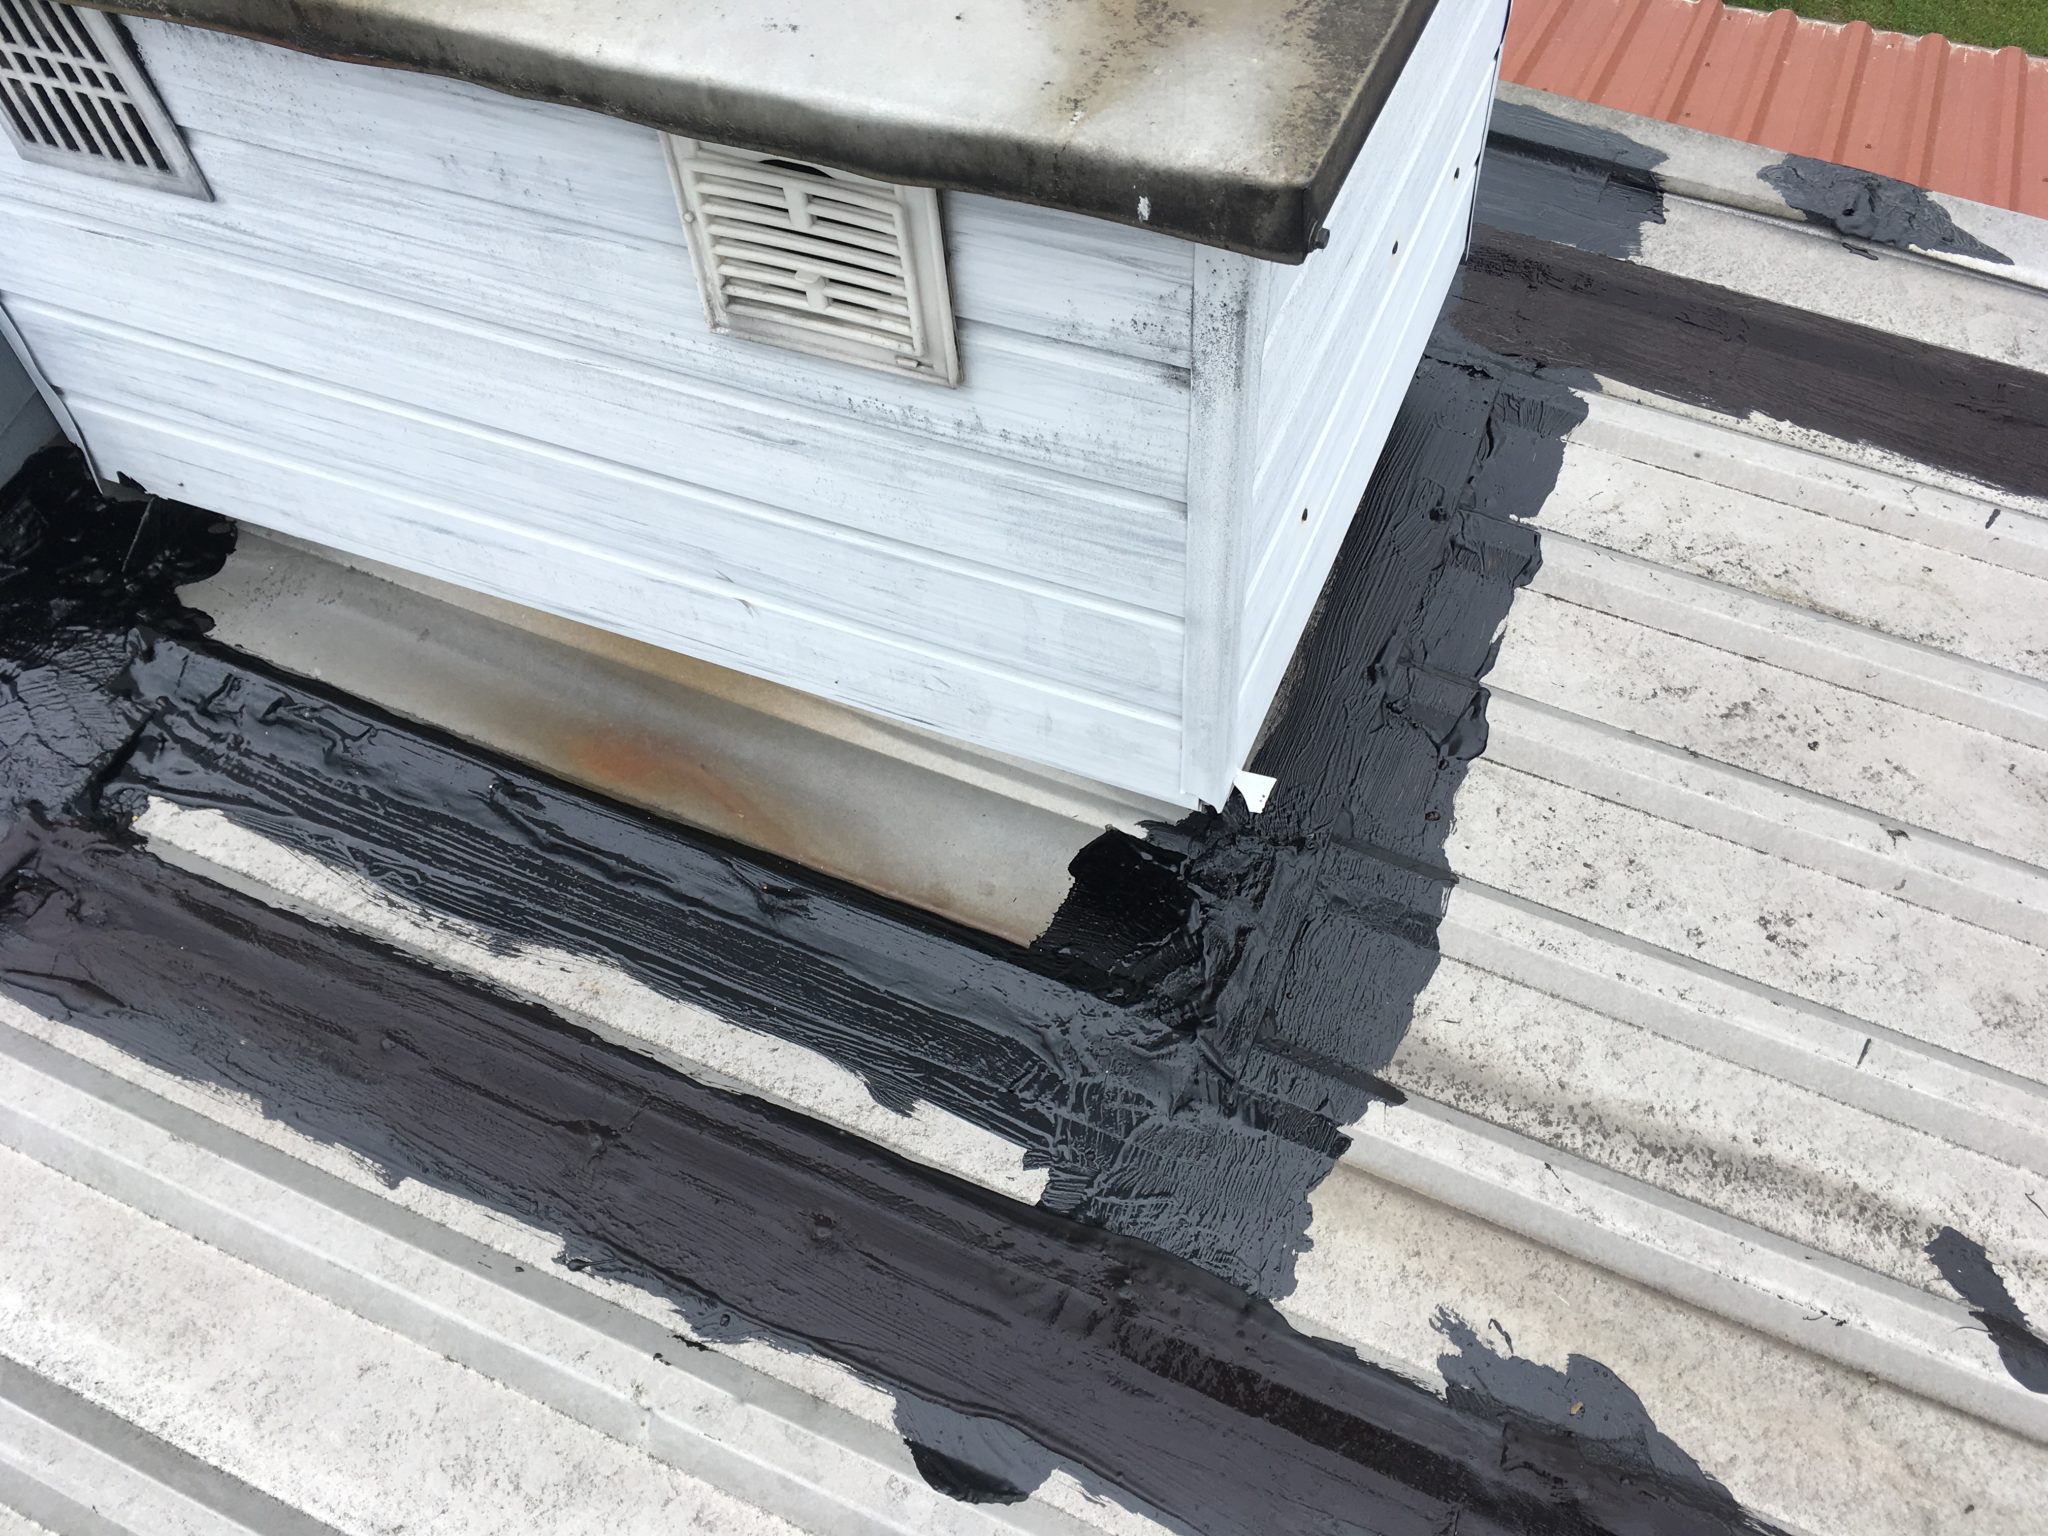 paskowanie" gumą CWS R CANADA WATERPROOF SYSTEM - naprawa dachu z blachy